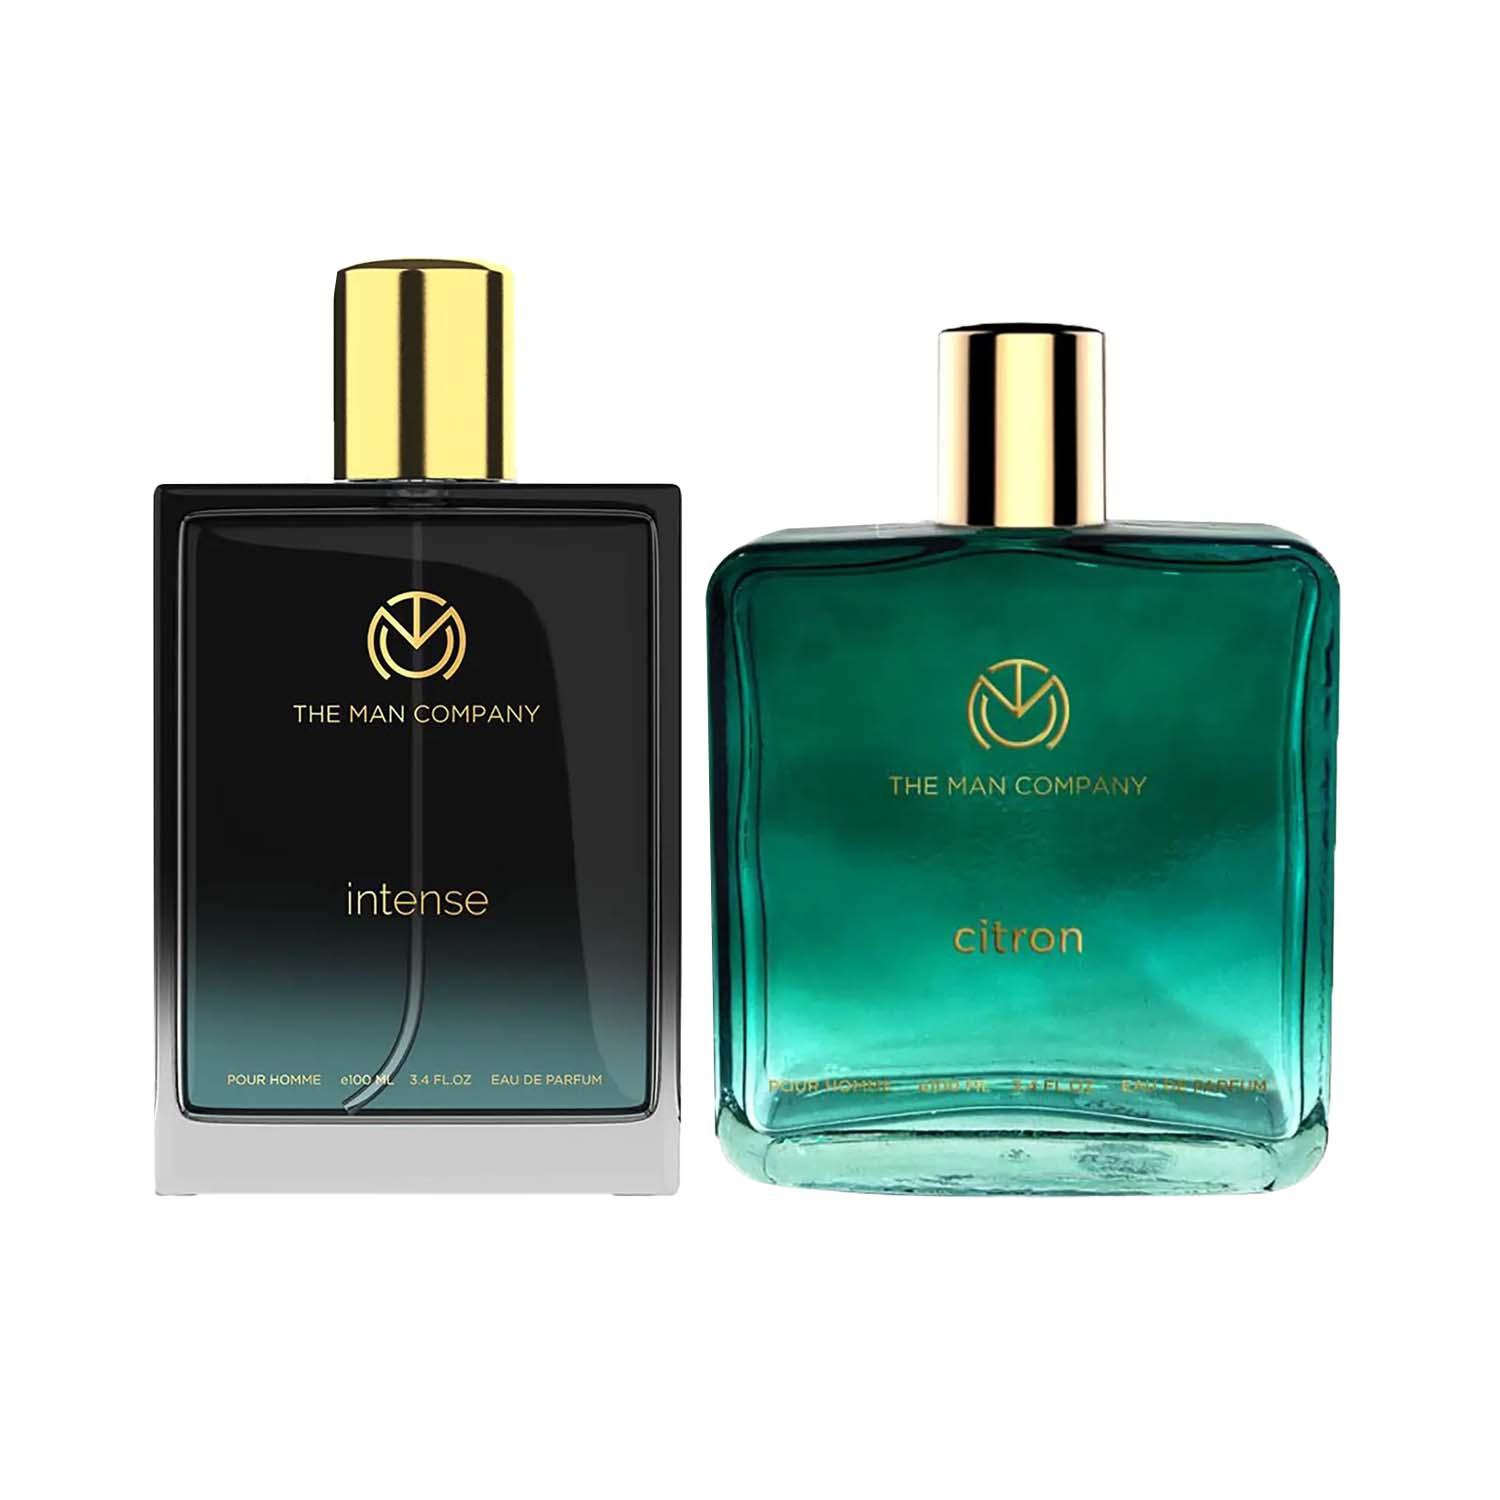 The Man Company Intense Eau De Parfum (100 ml) & Citron Eau De Parfum (100 ml) Combo